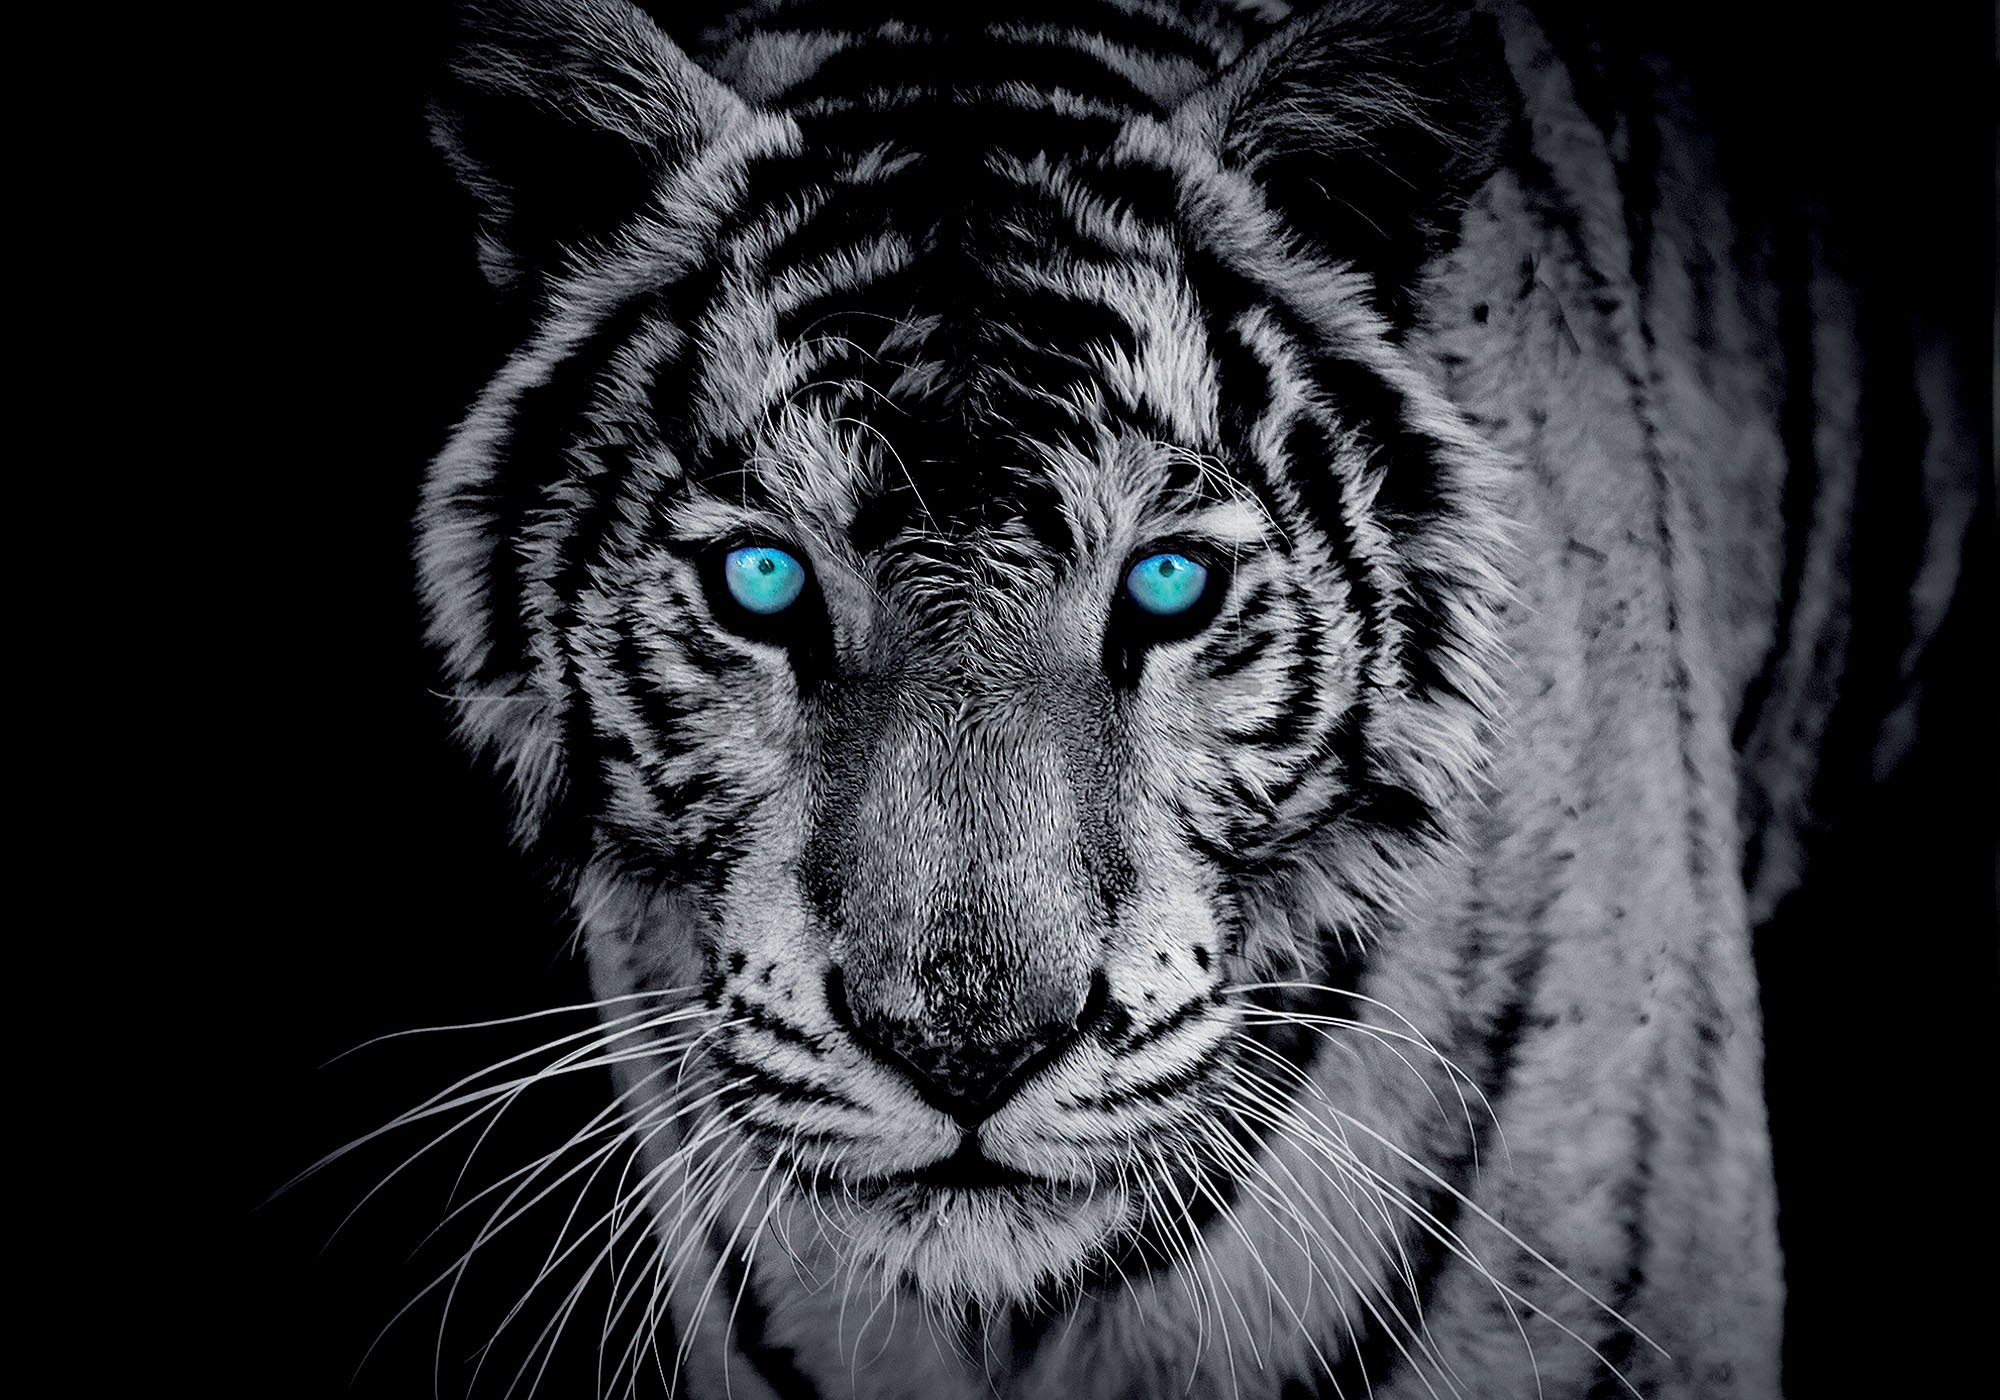 Fototapet: Tigru alb-negru - 184x254 cm